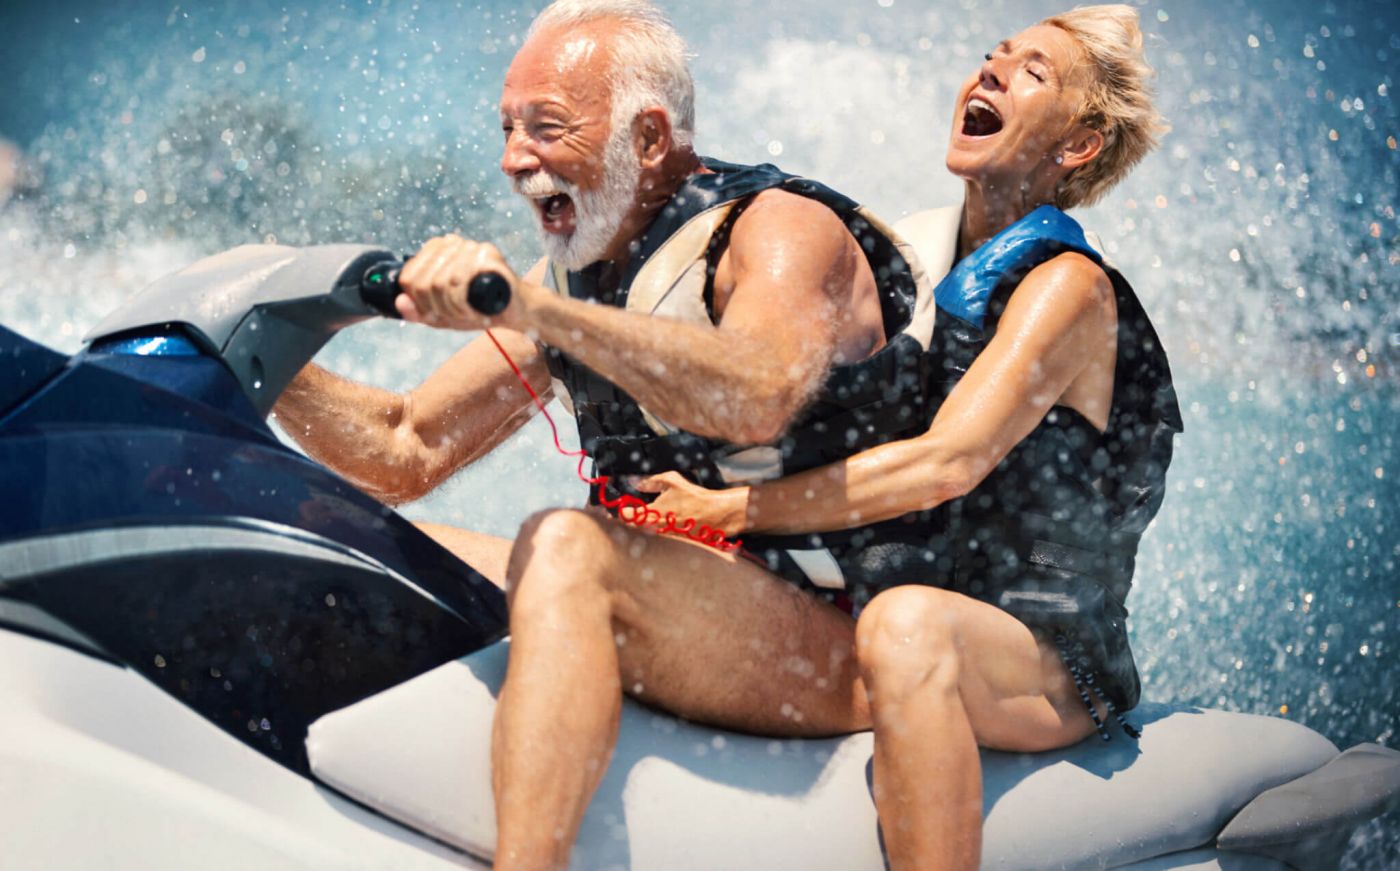 Older people on jet skis